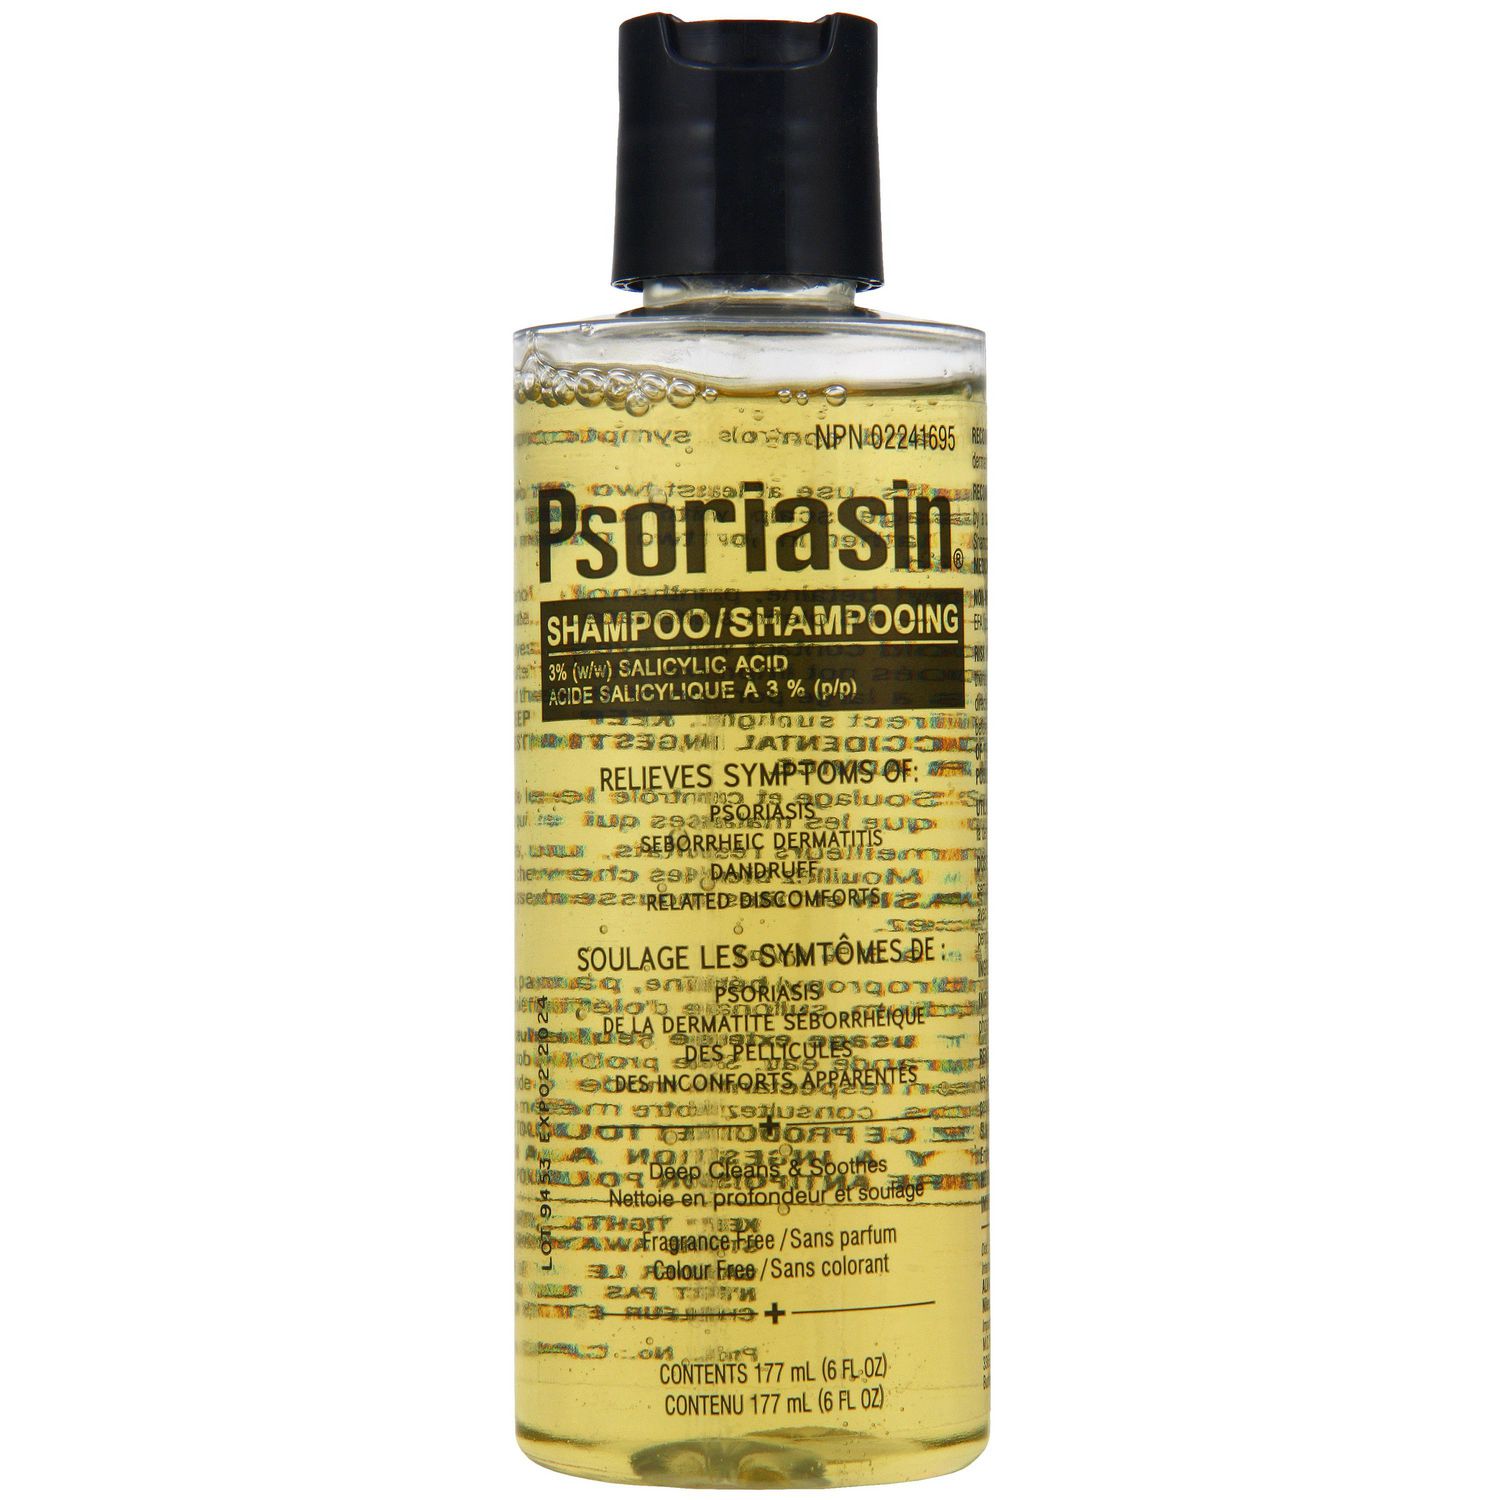 psoriasin shampoo reviews psoriasis injection nz